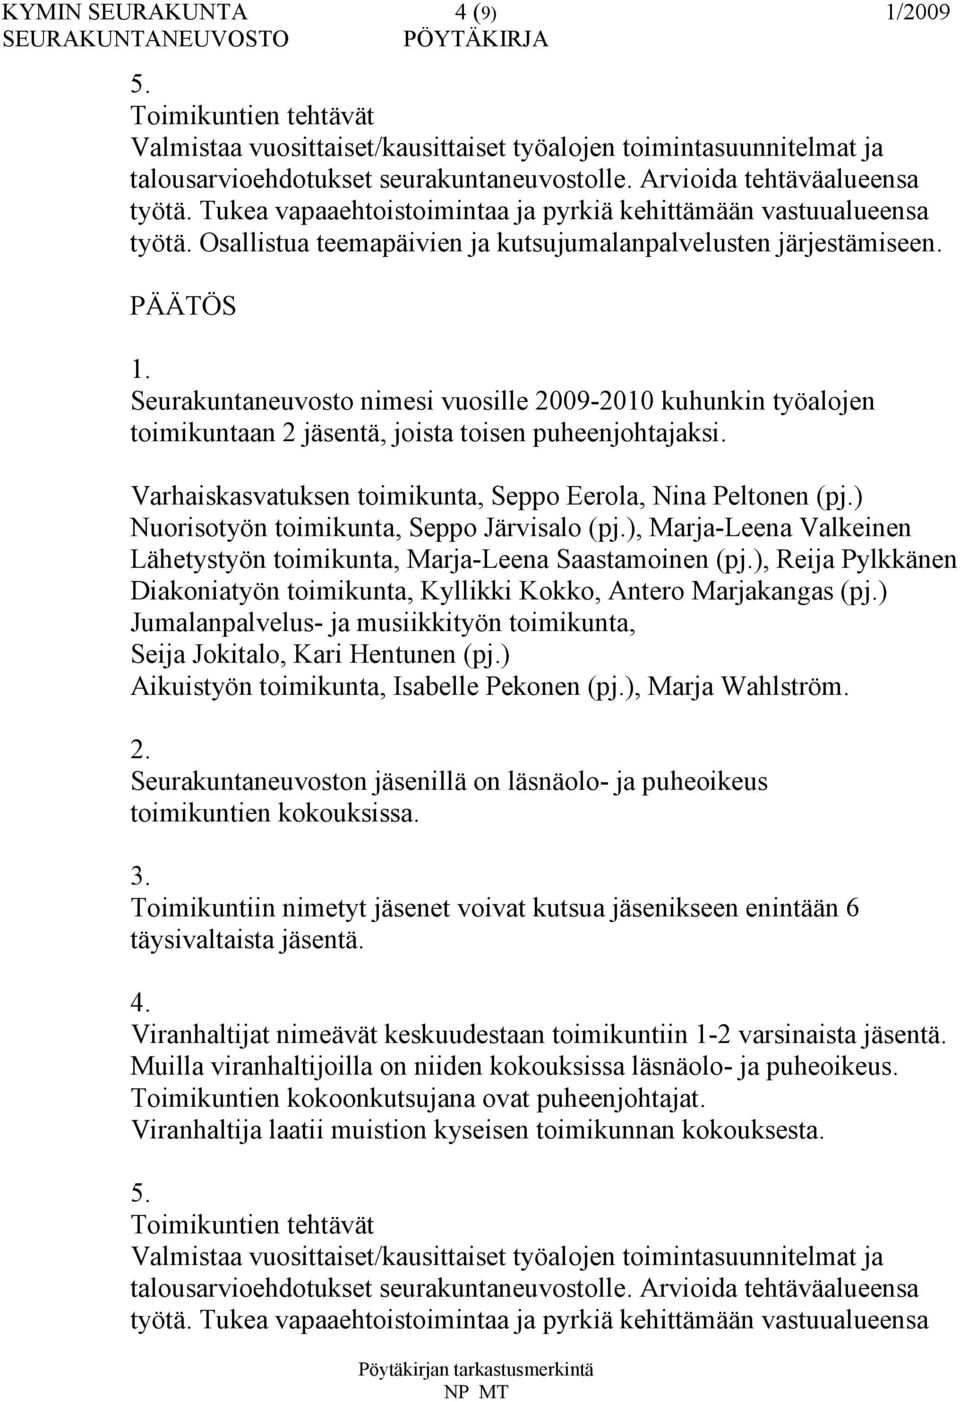 Seurakuntaneuvosto nimesi vuosille 2009-2010 kuhunkin työalojen toimikuntaan 2 jäsentä, joista toisen puheenjohtajaksi. Varhaiskasvatuksen toimikunta, Seppo Eerola, Nina Peltonen (pj.